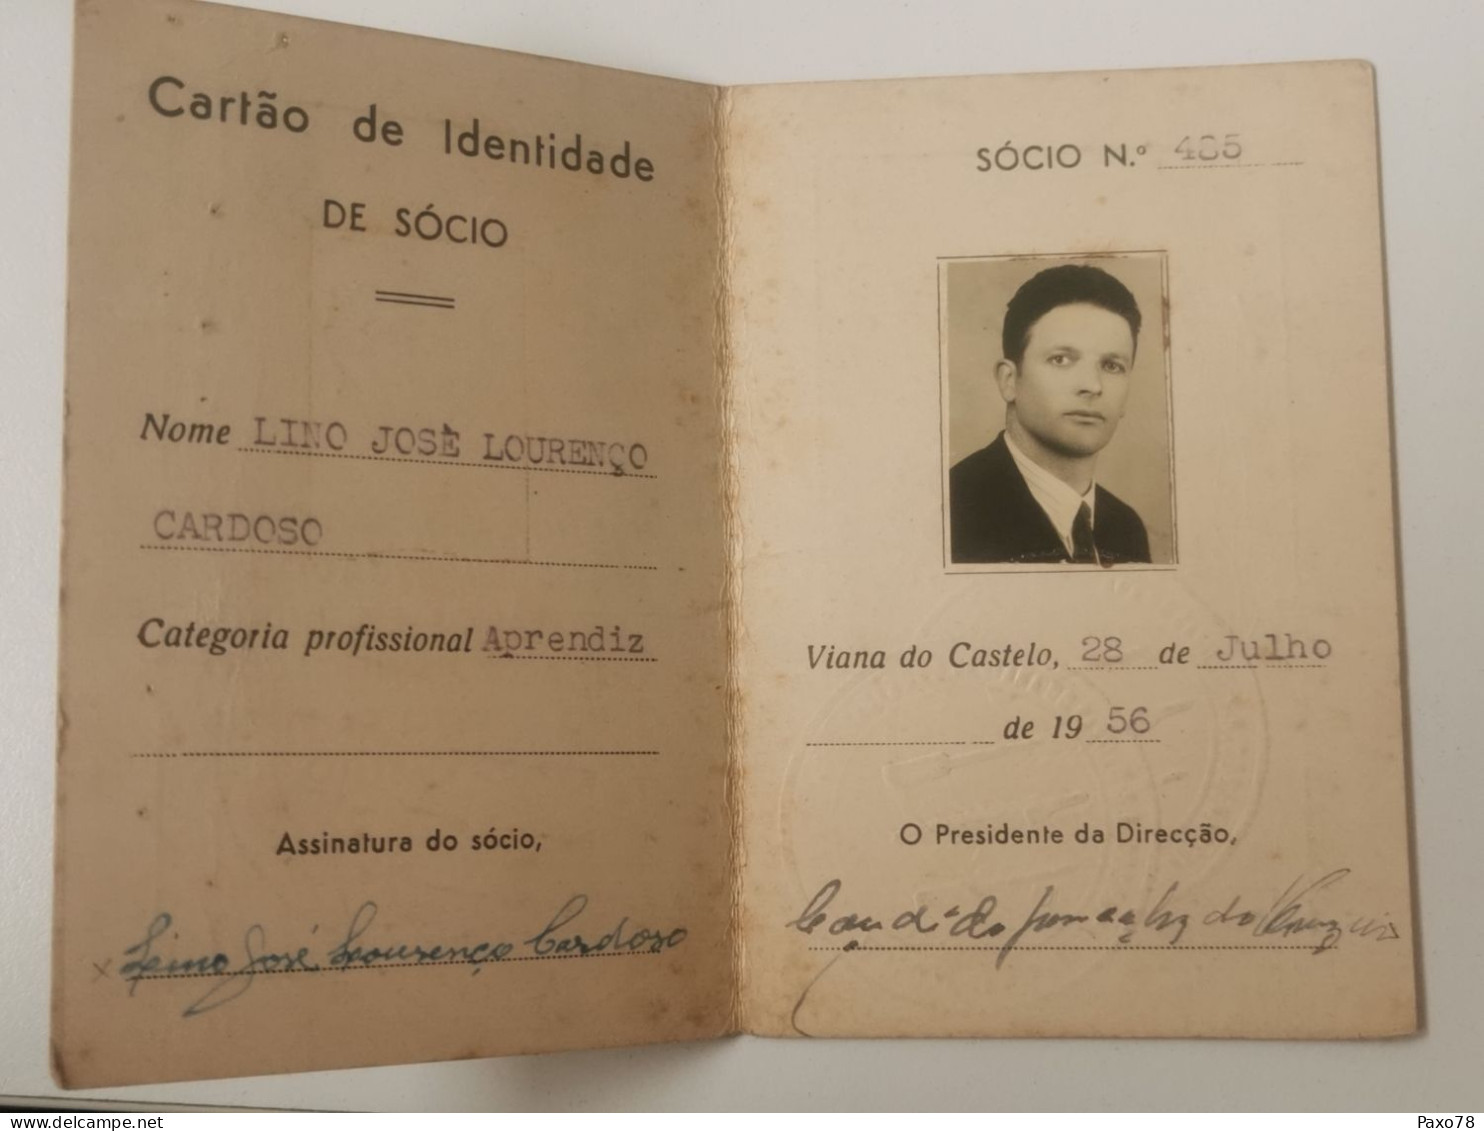 Carta De Identidade, Sindicato Nacional Dos Empregados E Operarios Panificaçâo Viana Do Castelo 1956 - Covers & Documents